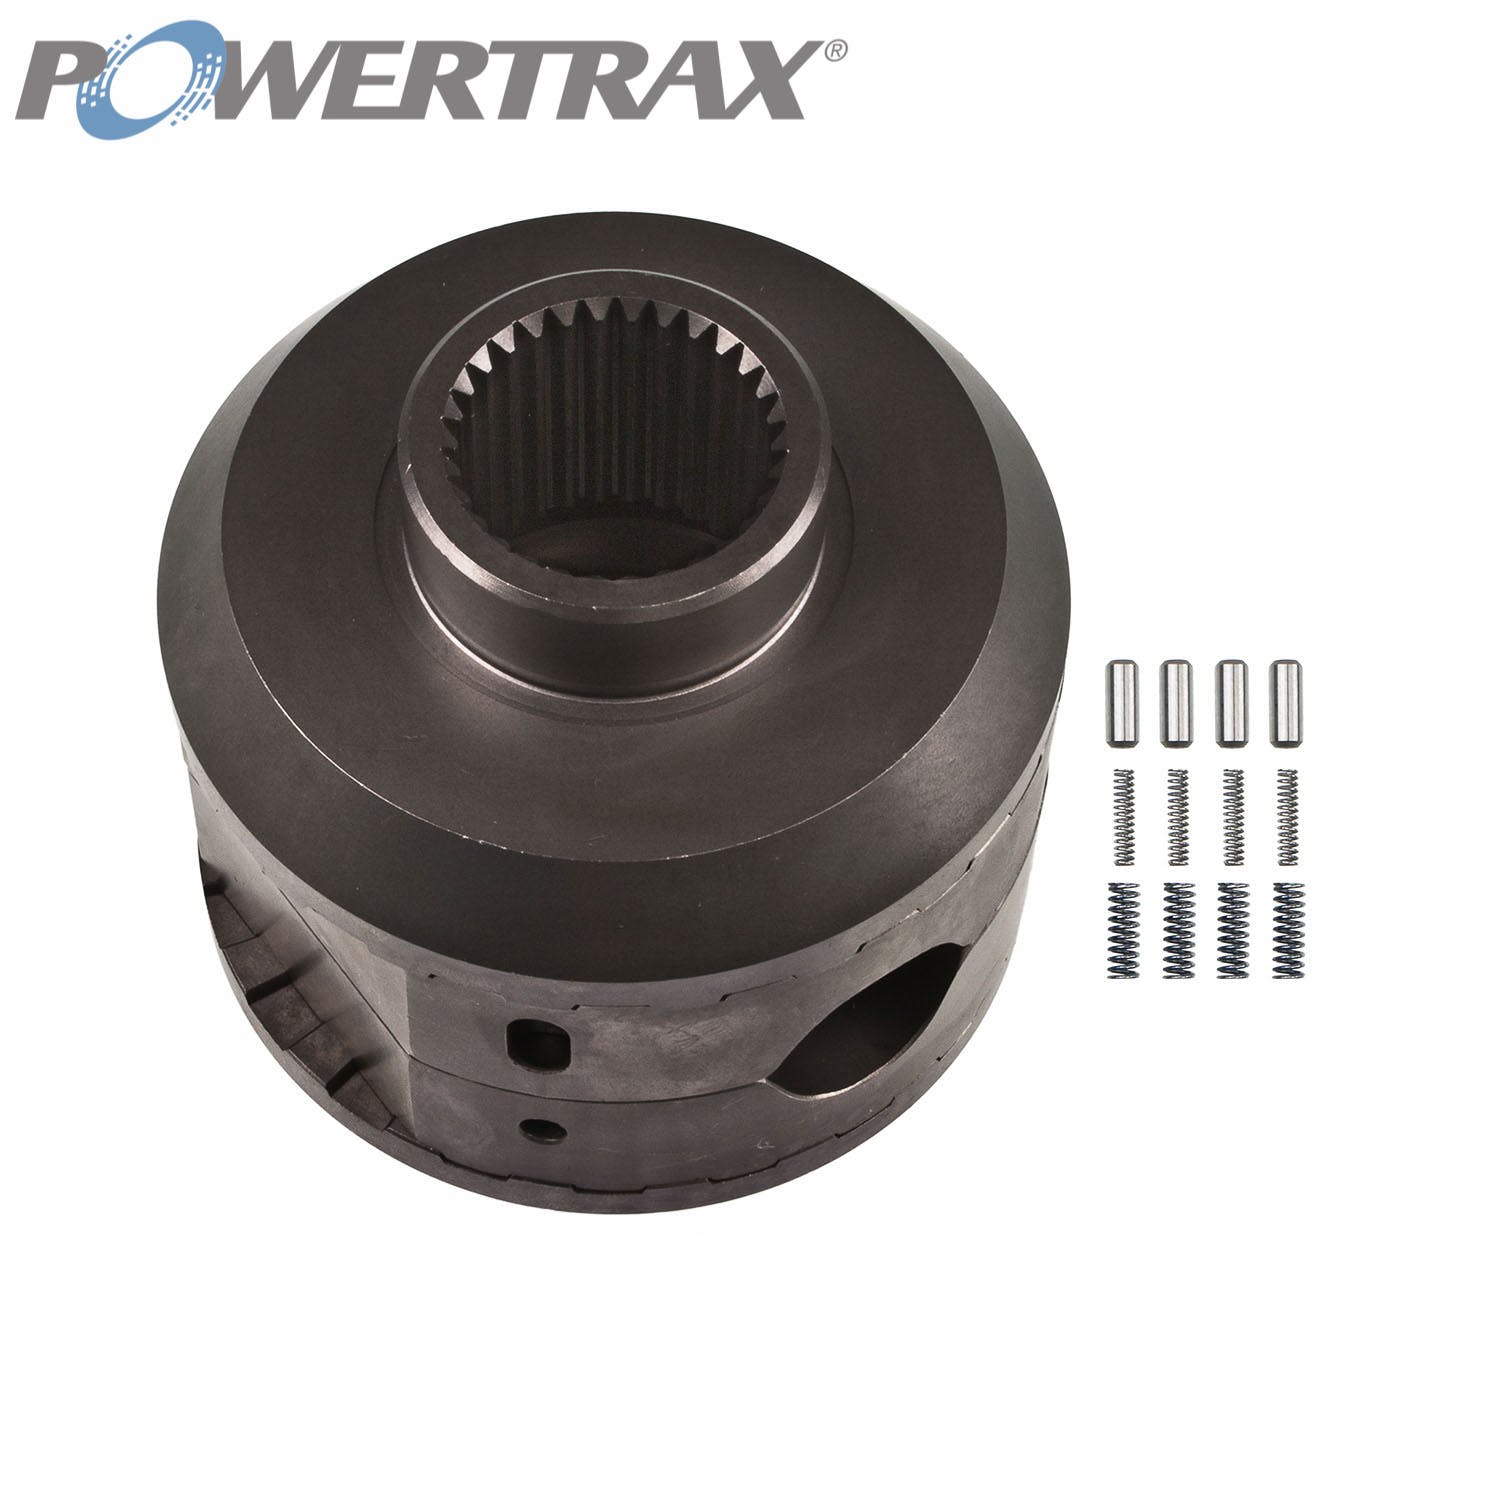 PowerTrax 1240-LR Lock Right Locker